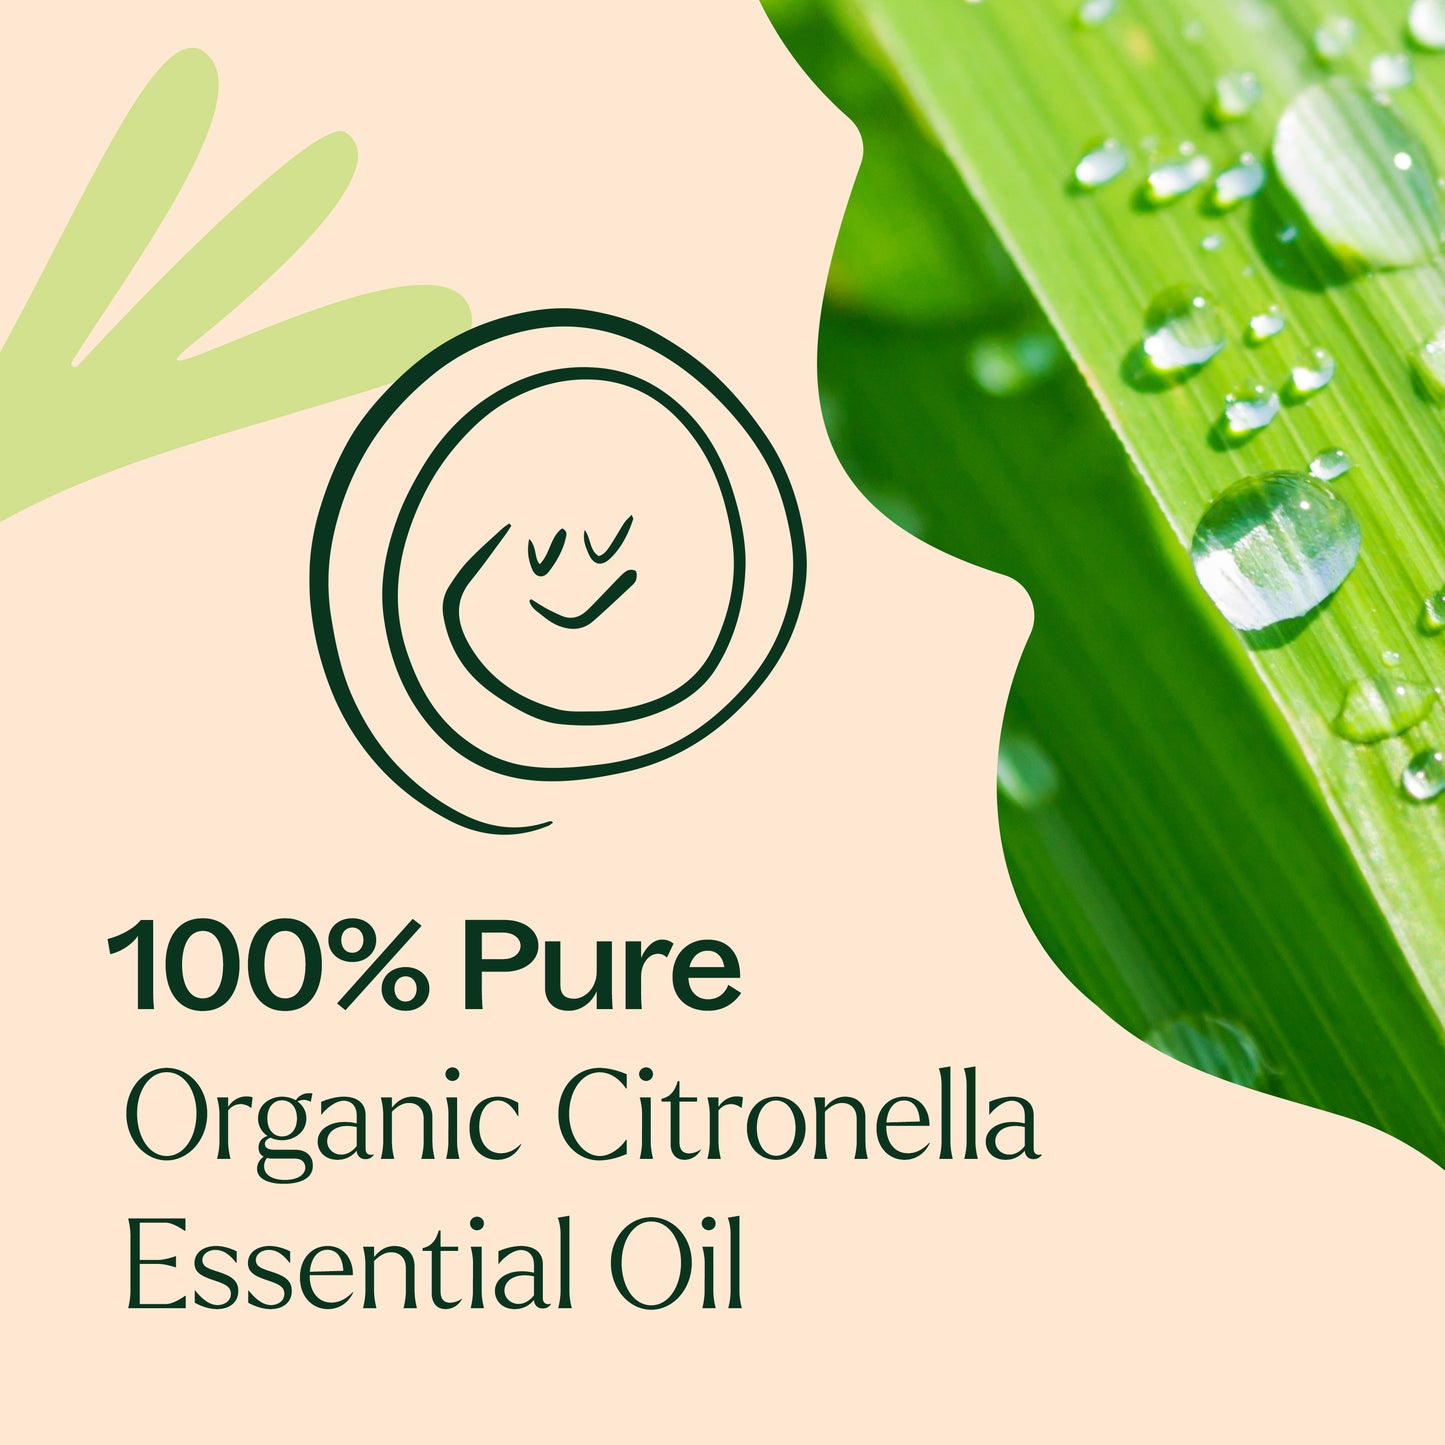 100% Pure Organic Citronella Essential Oil